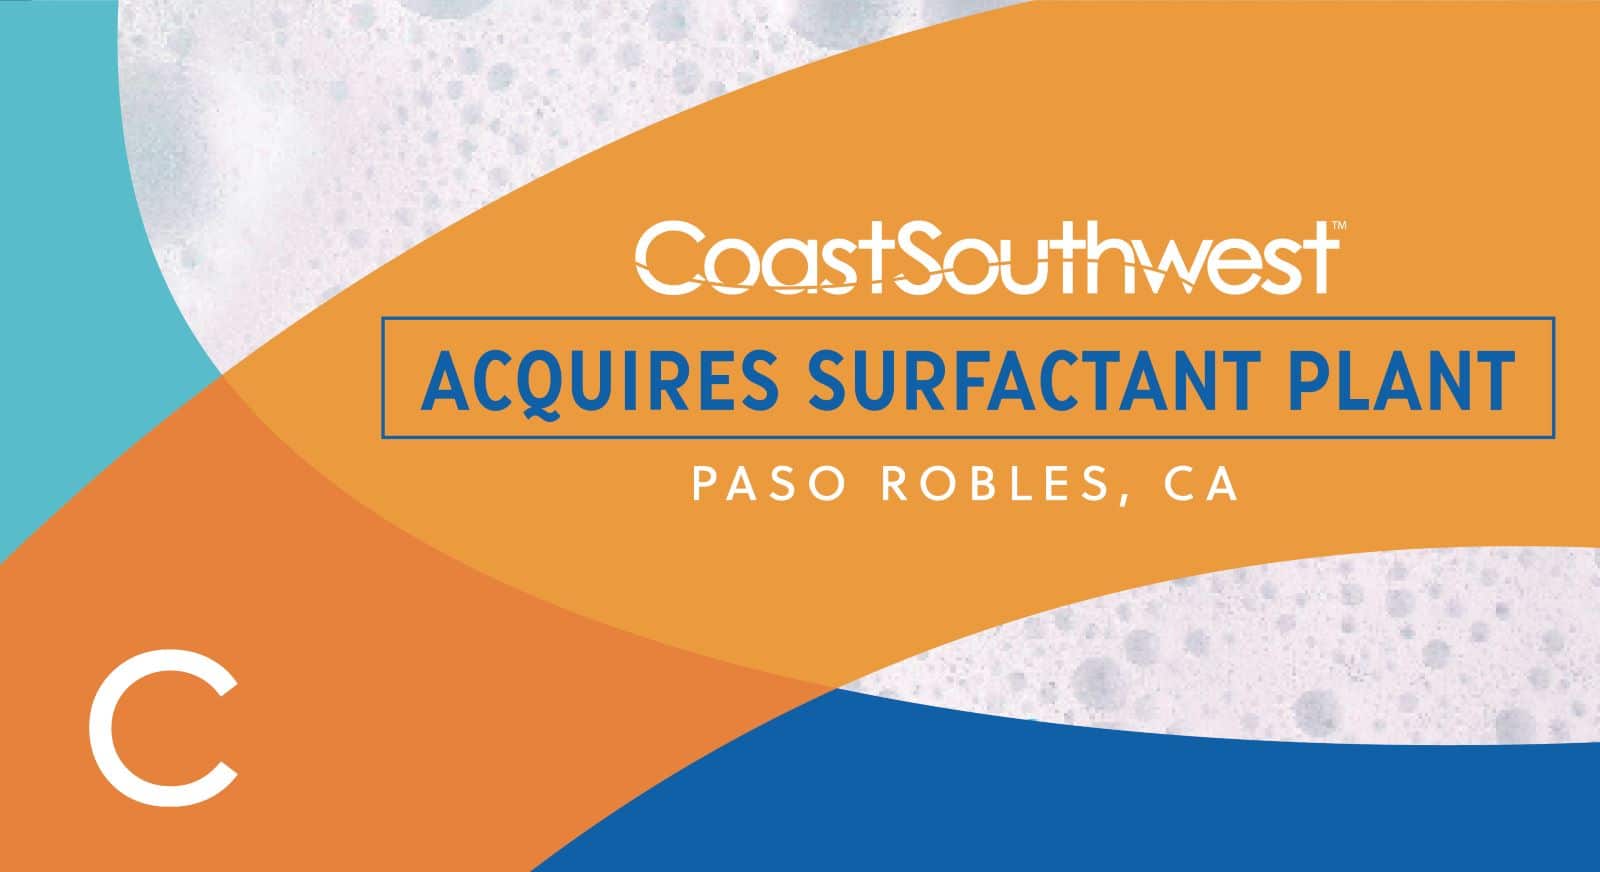 Coast Southwest acquires Surfactant plant, Paso Robles, CA